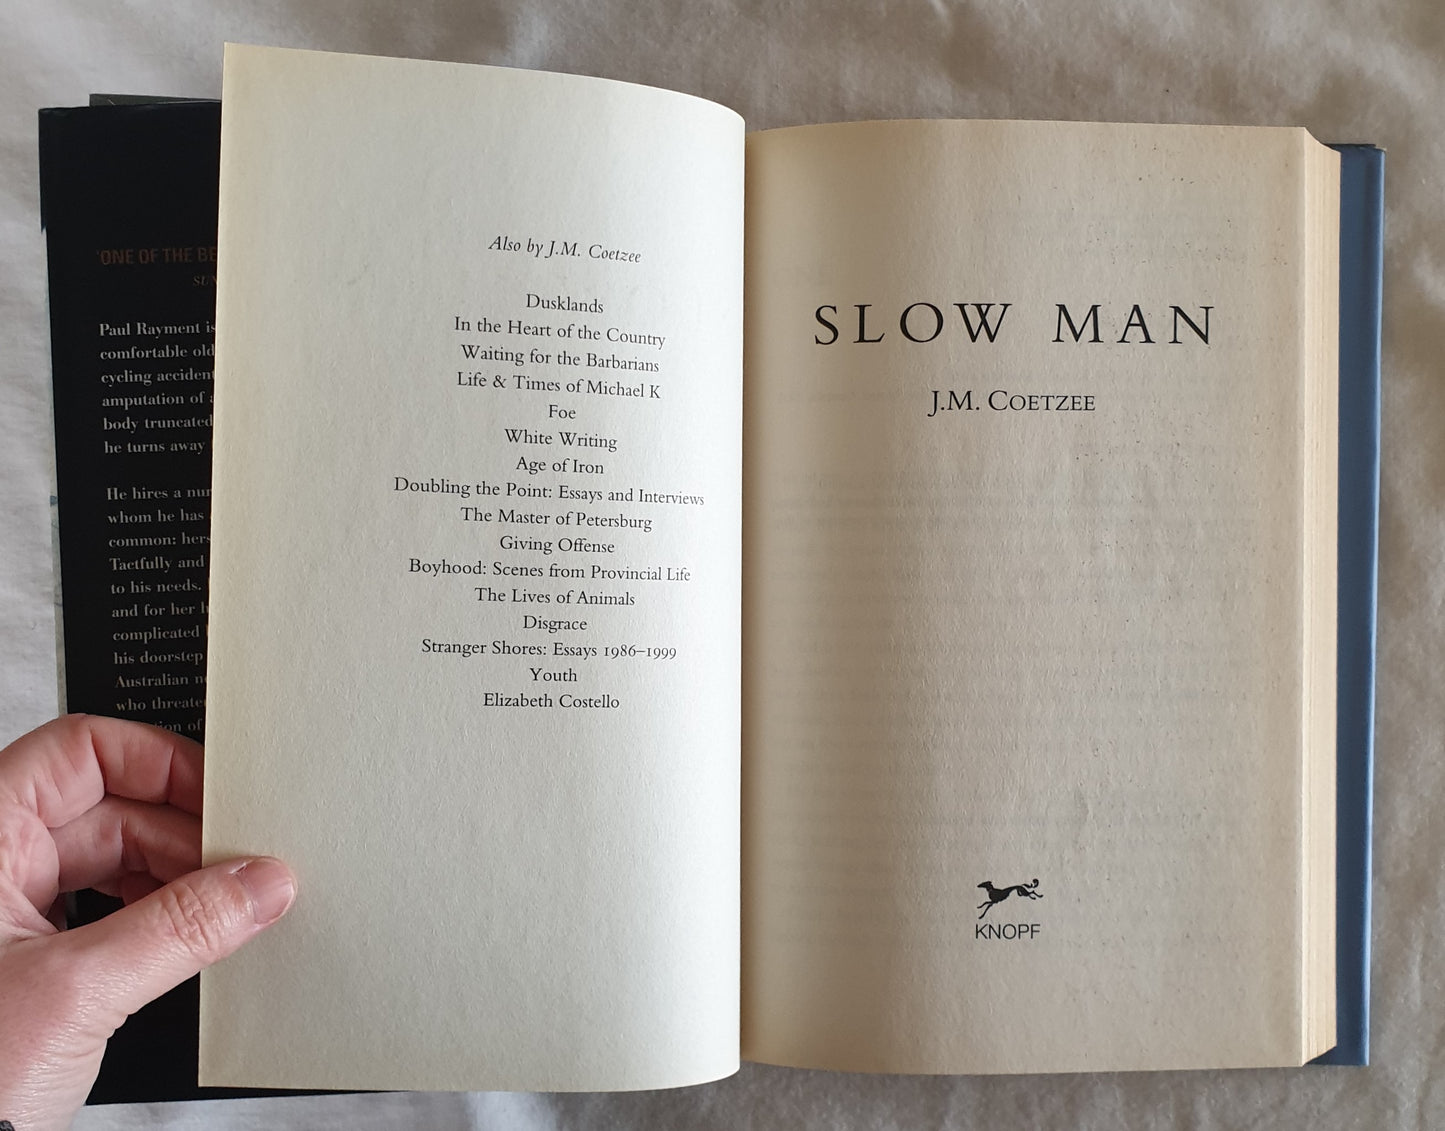 Slow Man by J. M. Coetzee